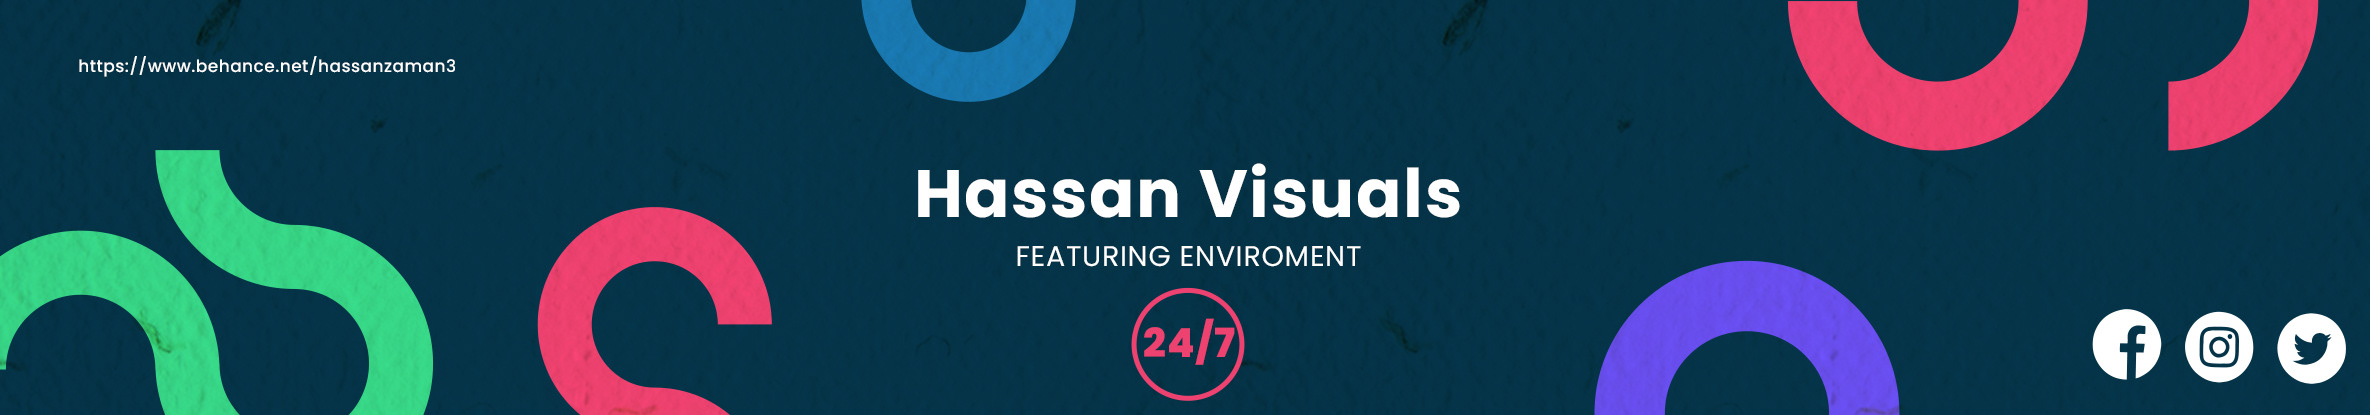 Hassan Visuals のプロファイルバナー